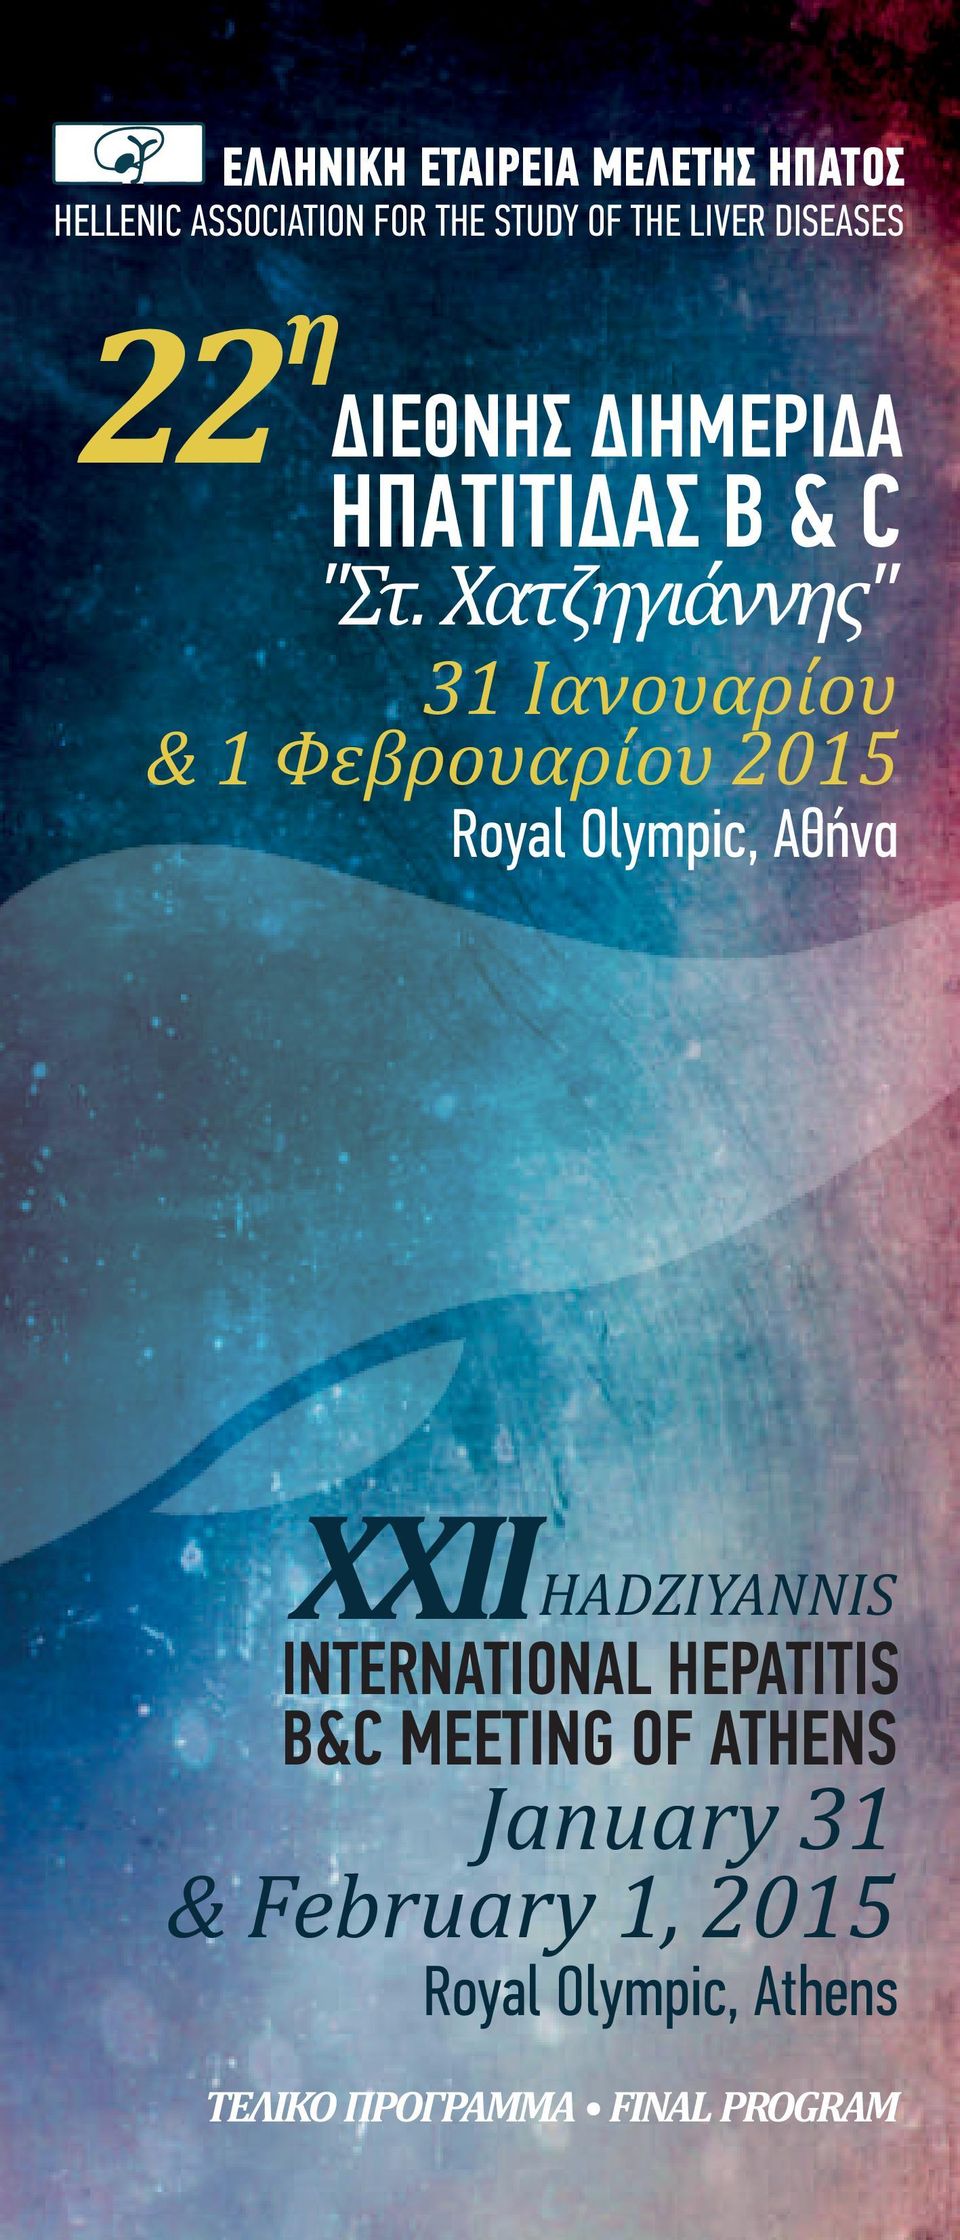 Χατζηγιάννης" 31 Ιανουαρίου & 1 Φεβρουαρίου 2015 Royal Olympic, Αθήνα 22